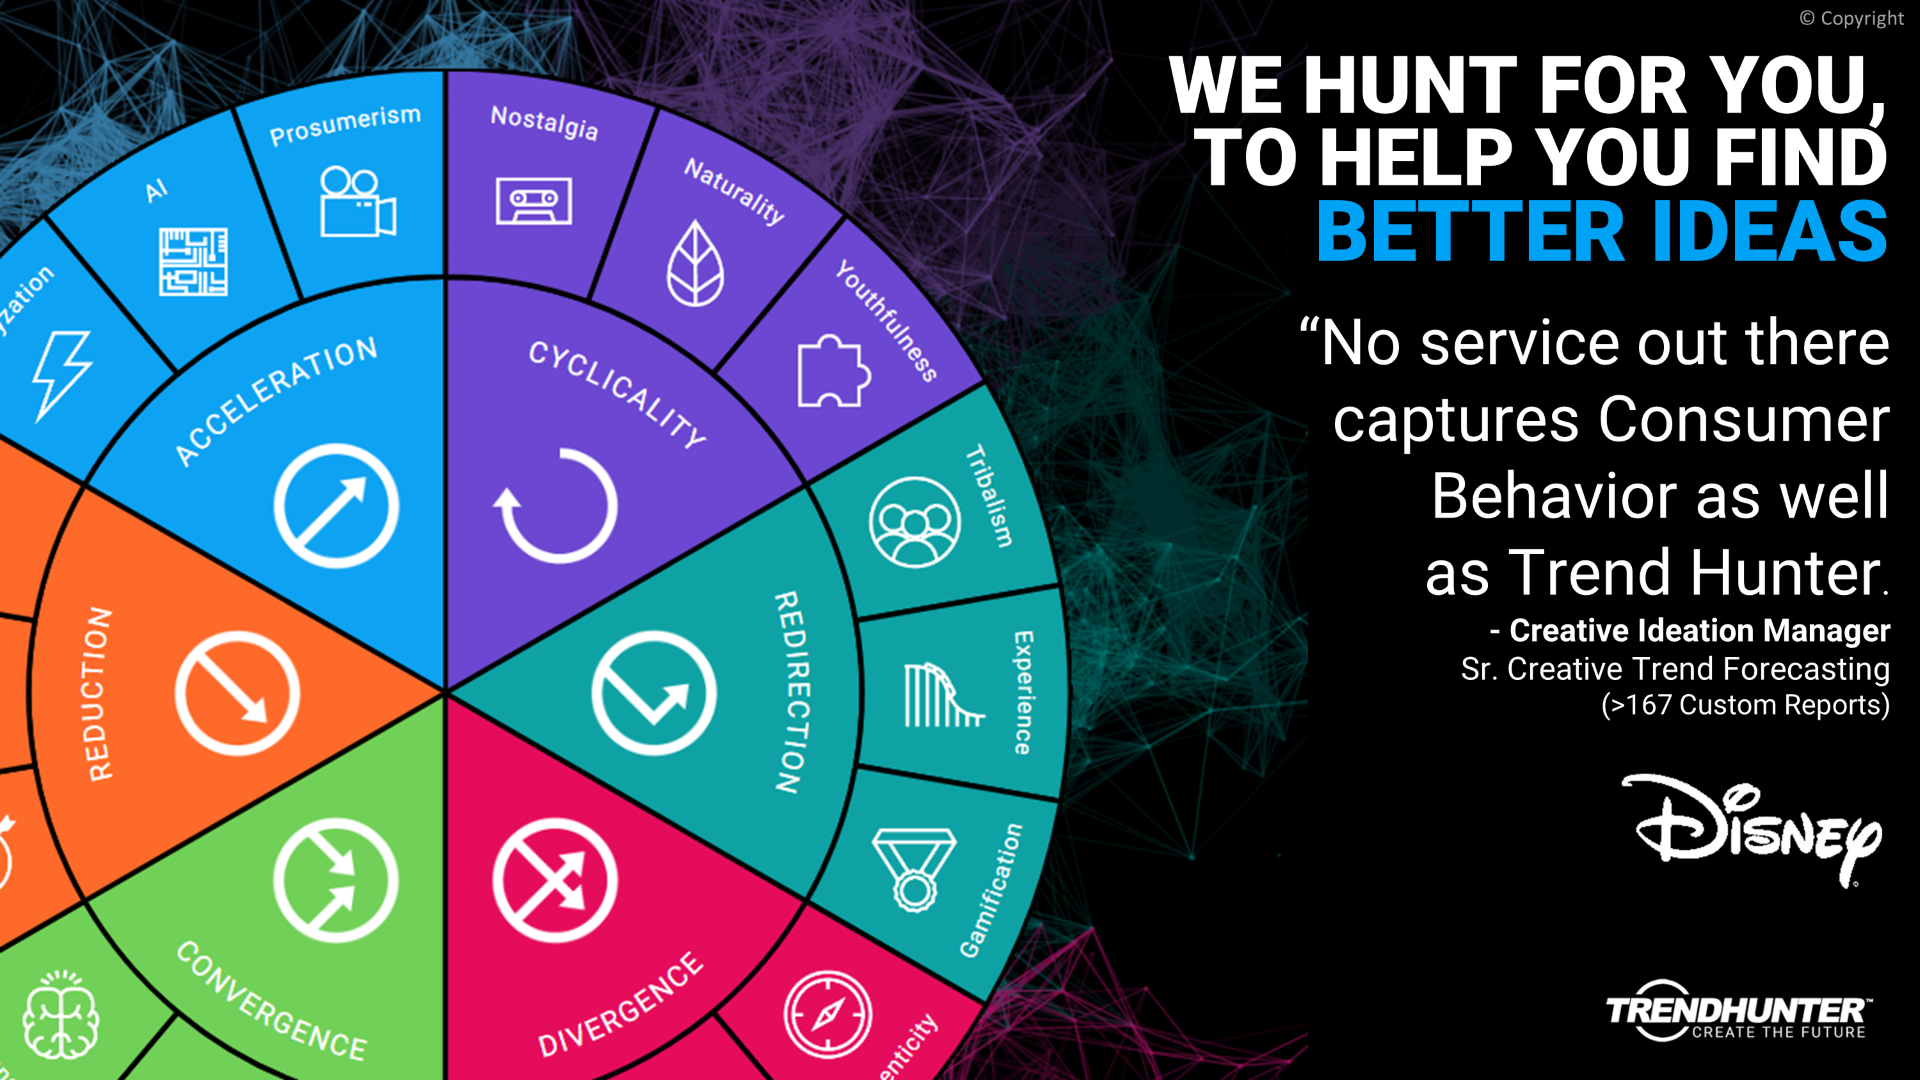 Image Slide: We hunt for you